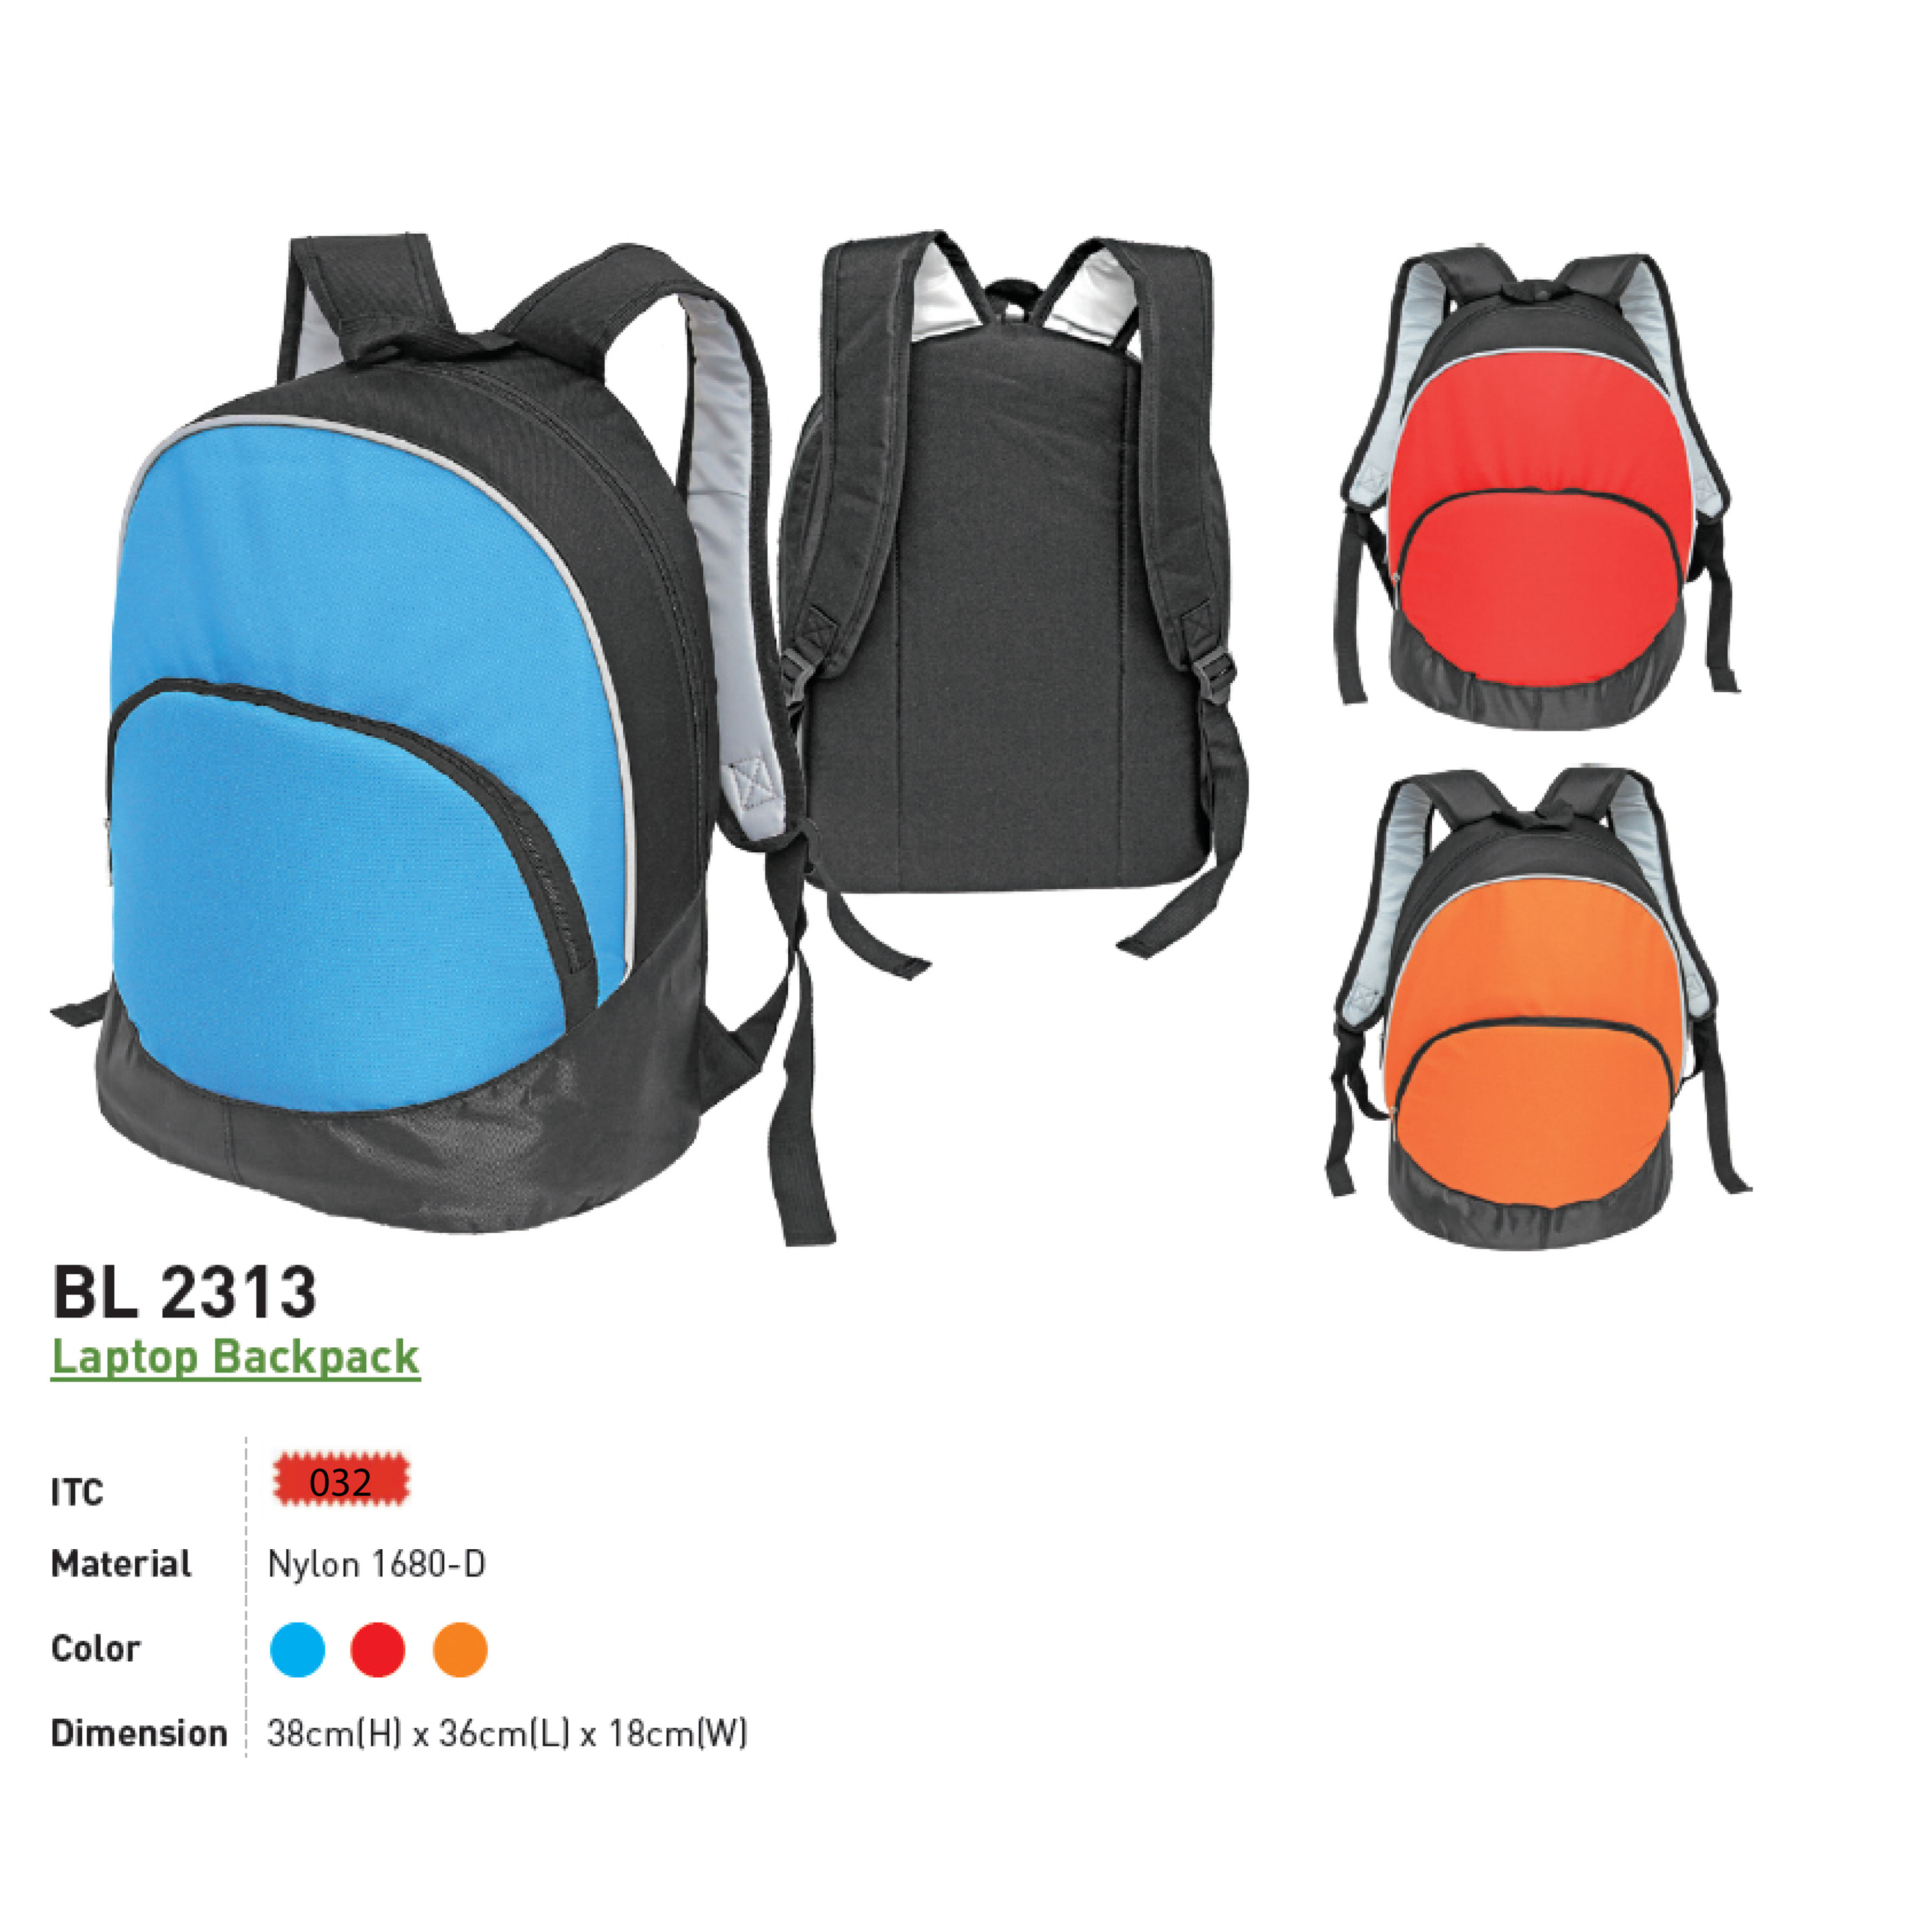 BL 2313 - Laptop Backpack